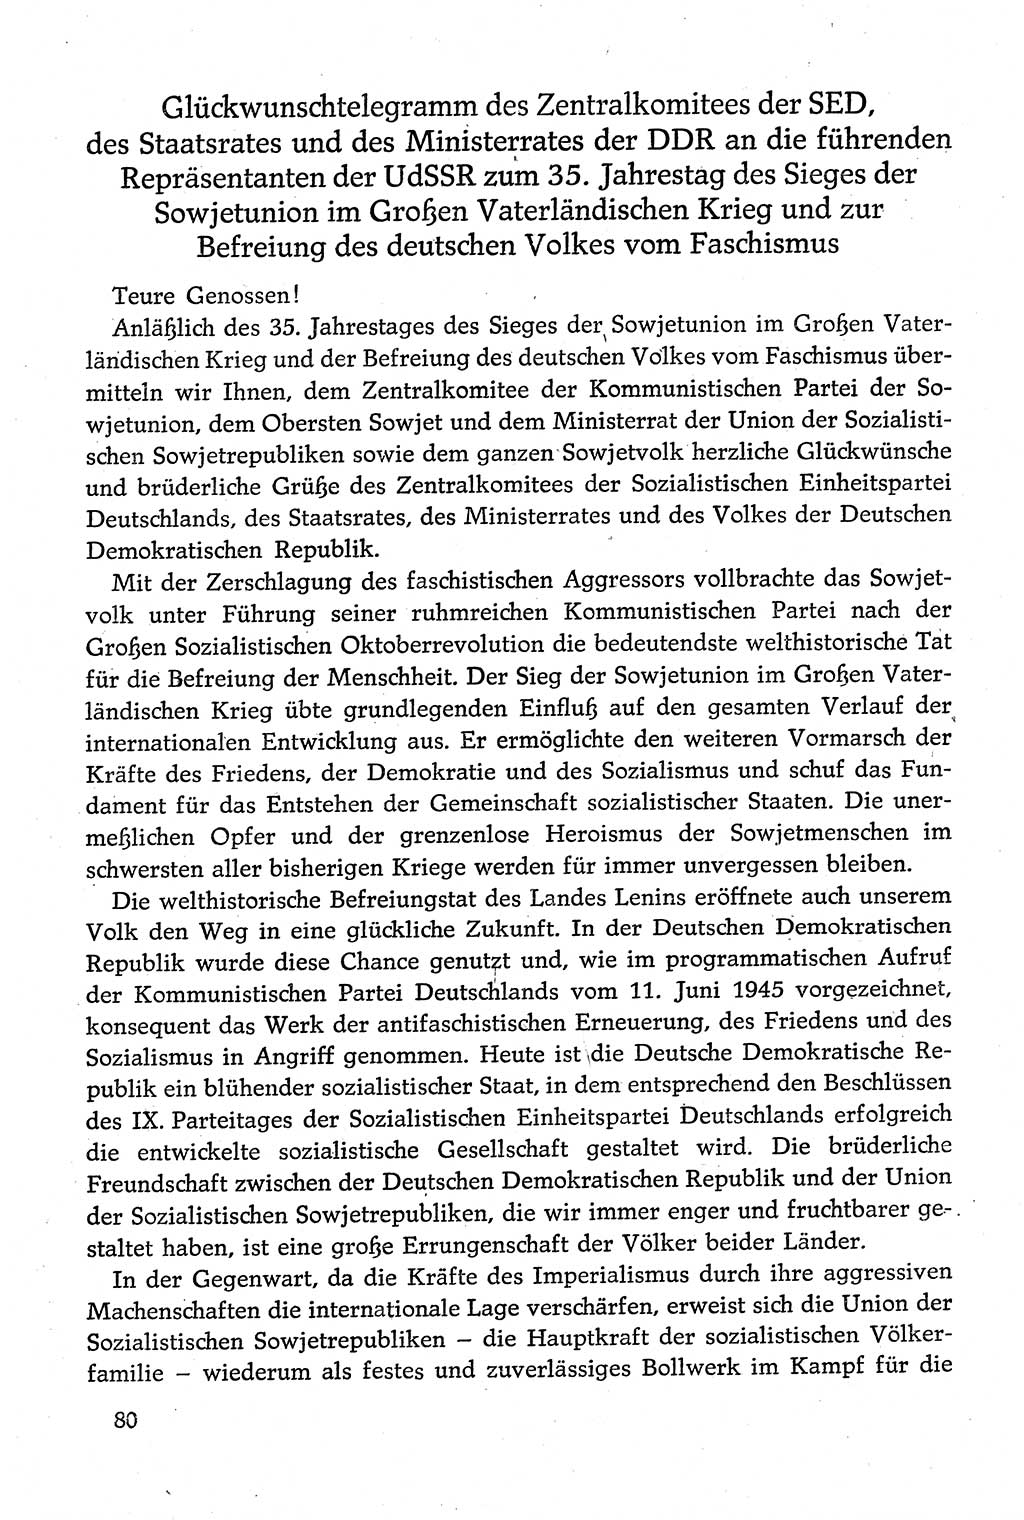 Dokumente der Sozialistischen Einheitspartei Deutschlands (SED) [Deutsche Demokratische Republik (DDR)] 1980-1981, Seite 80 (Dok. SED DDR 1980-1981, S. 80)